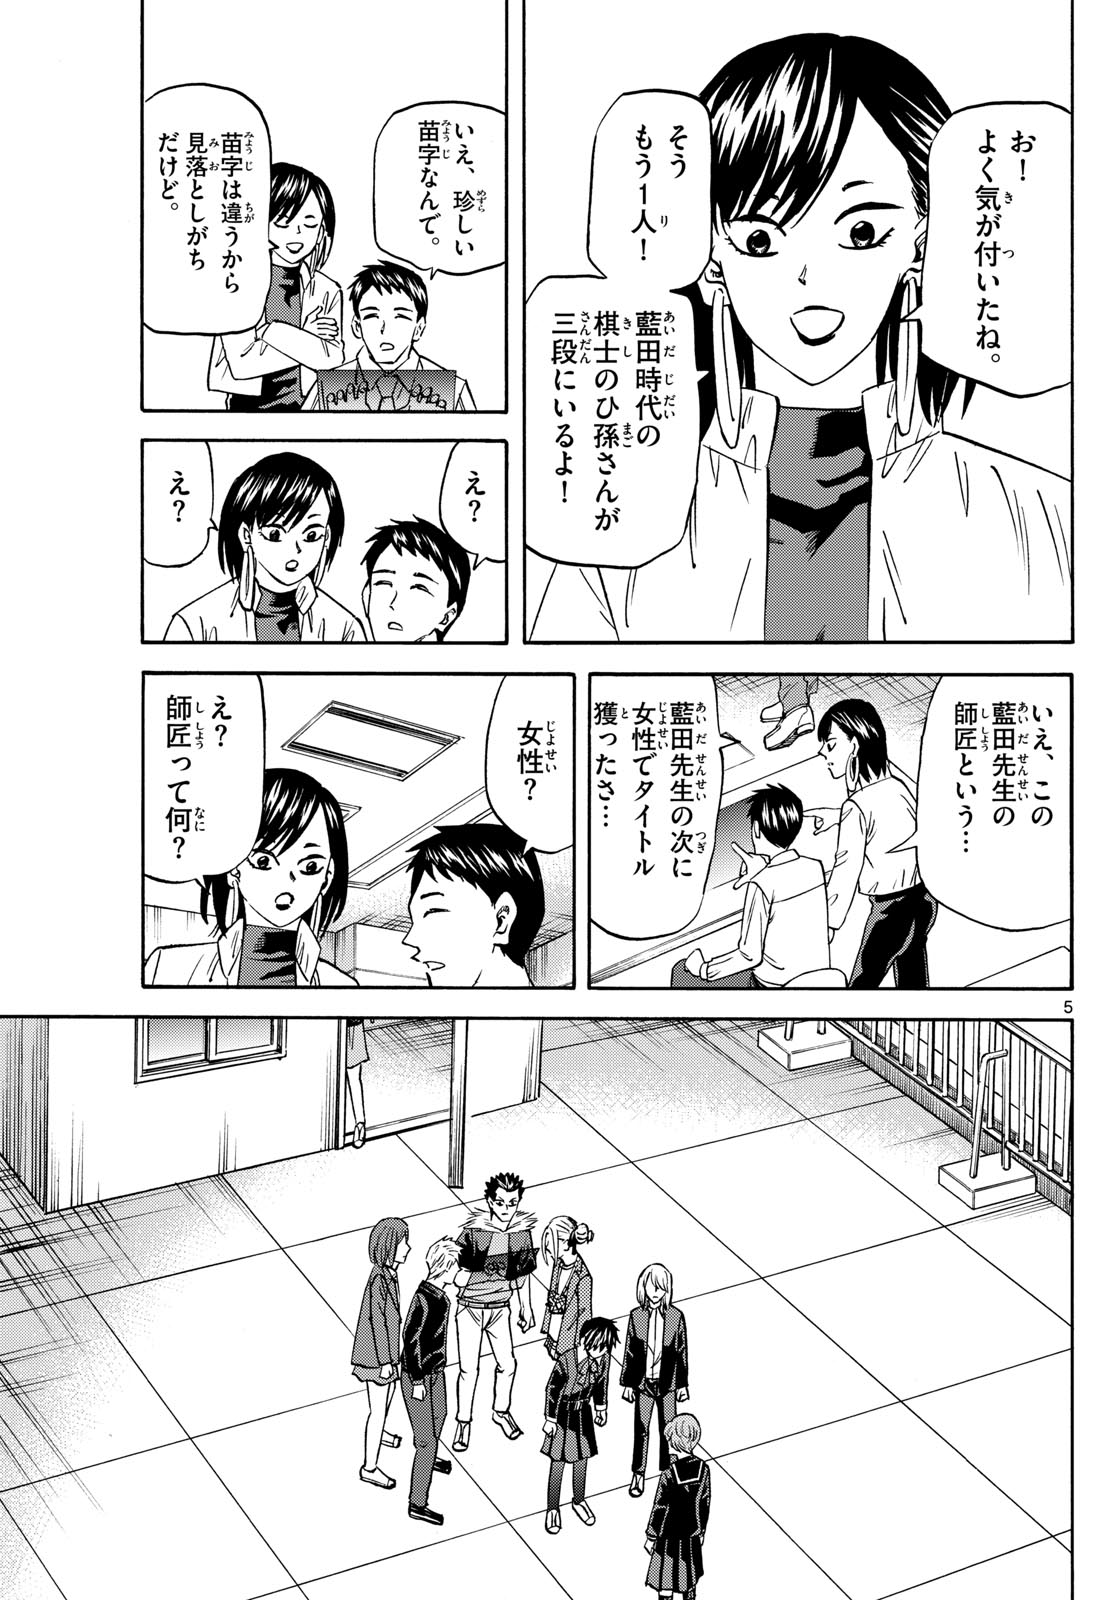 Tatsu to Ichigo - Chapter 188 - Page 5